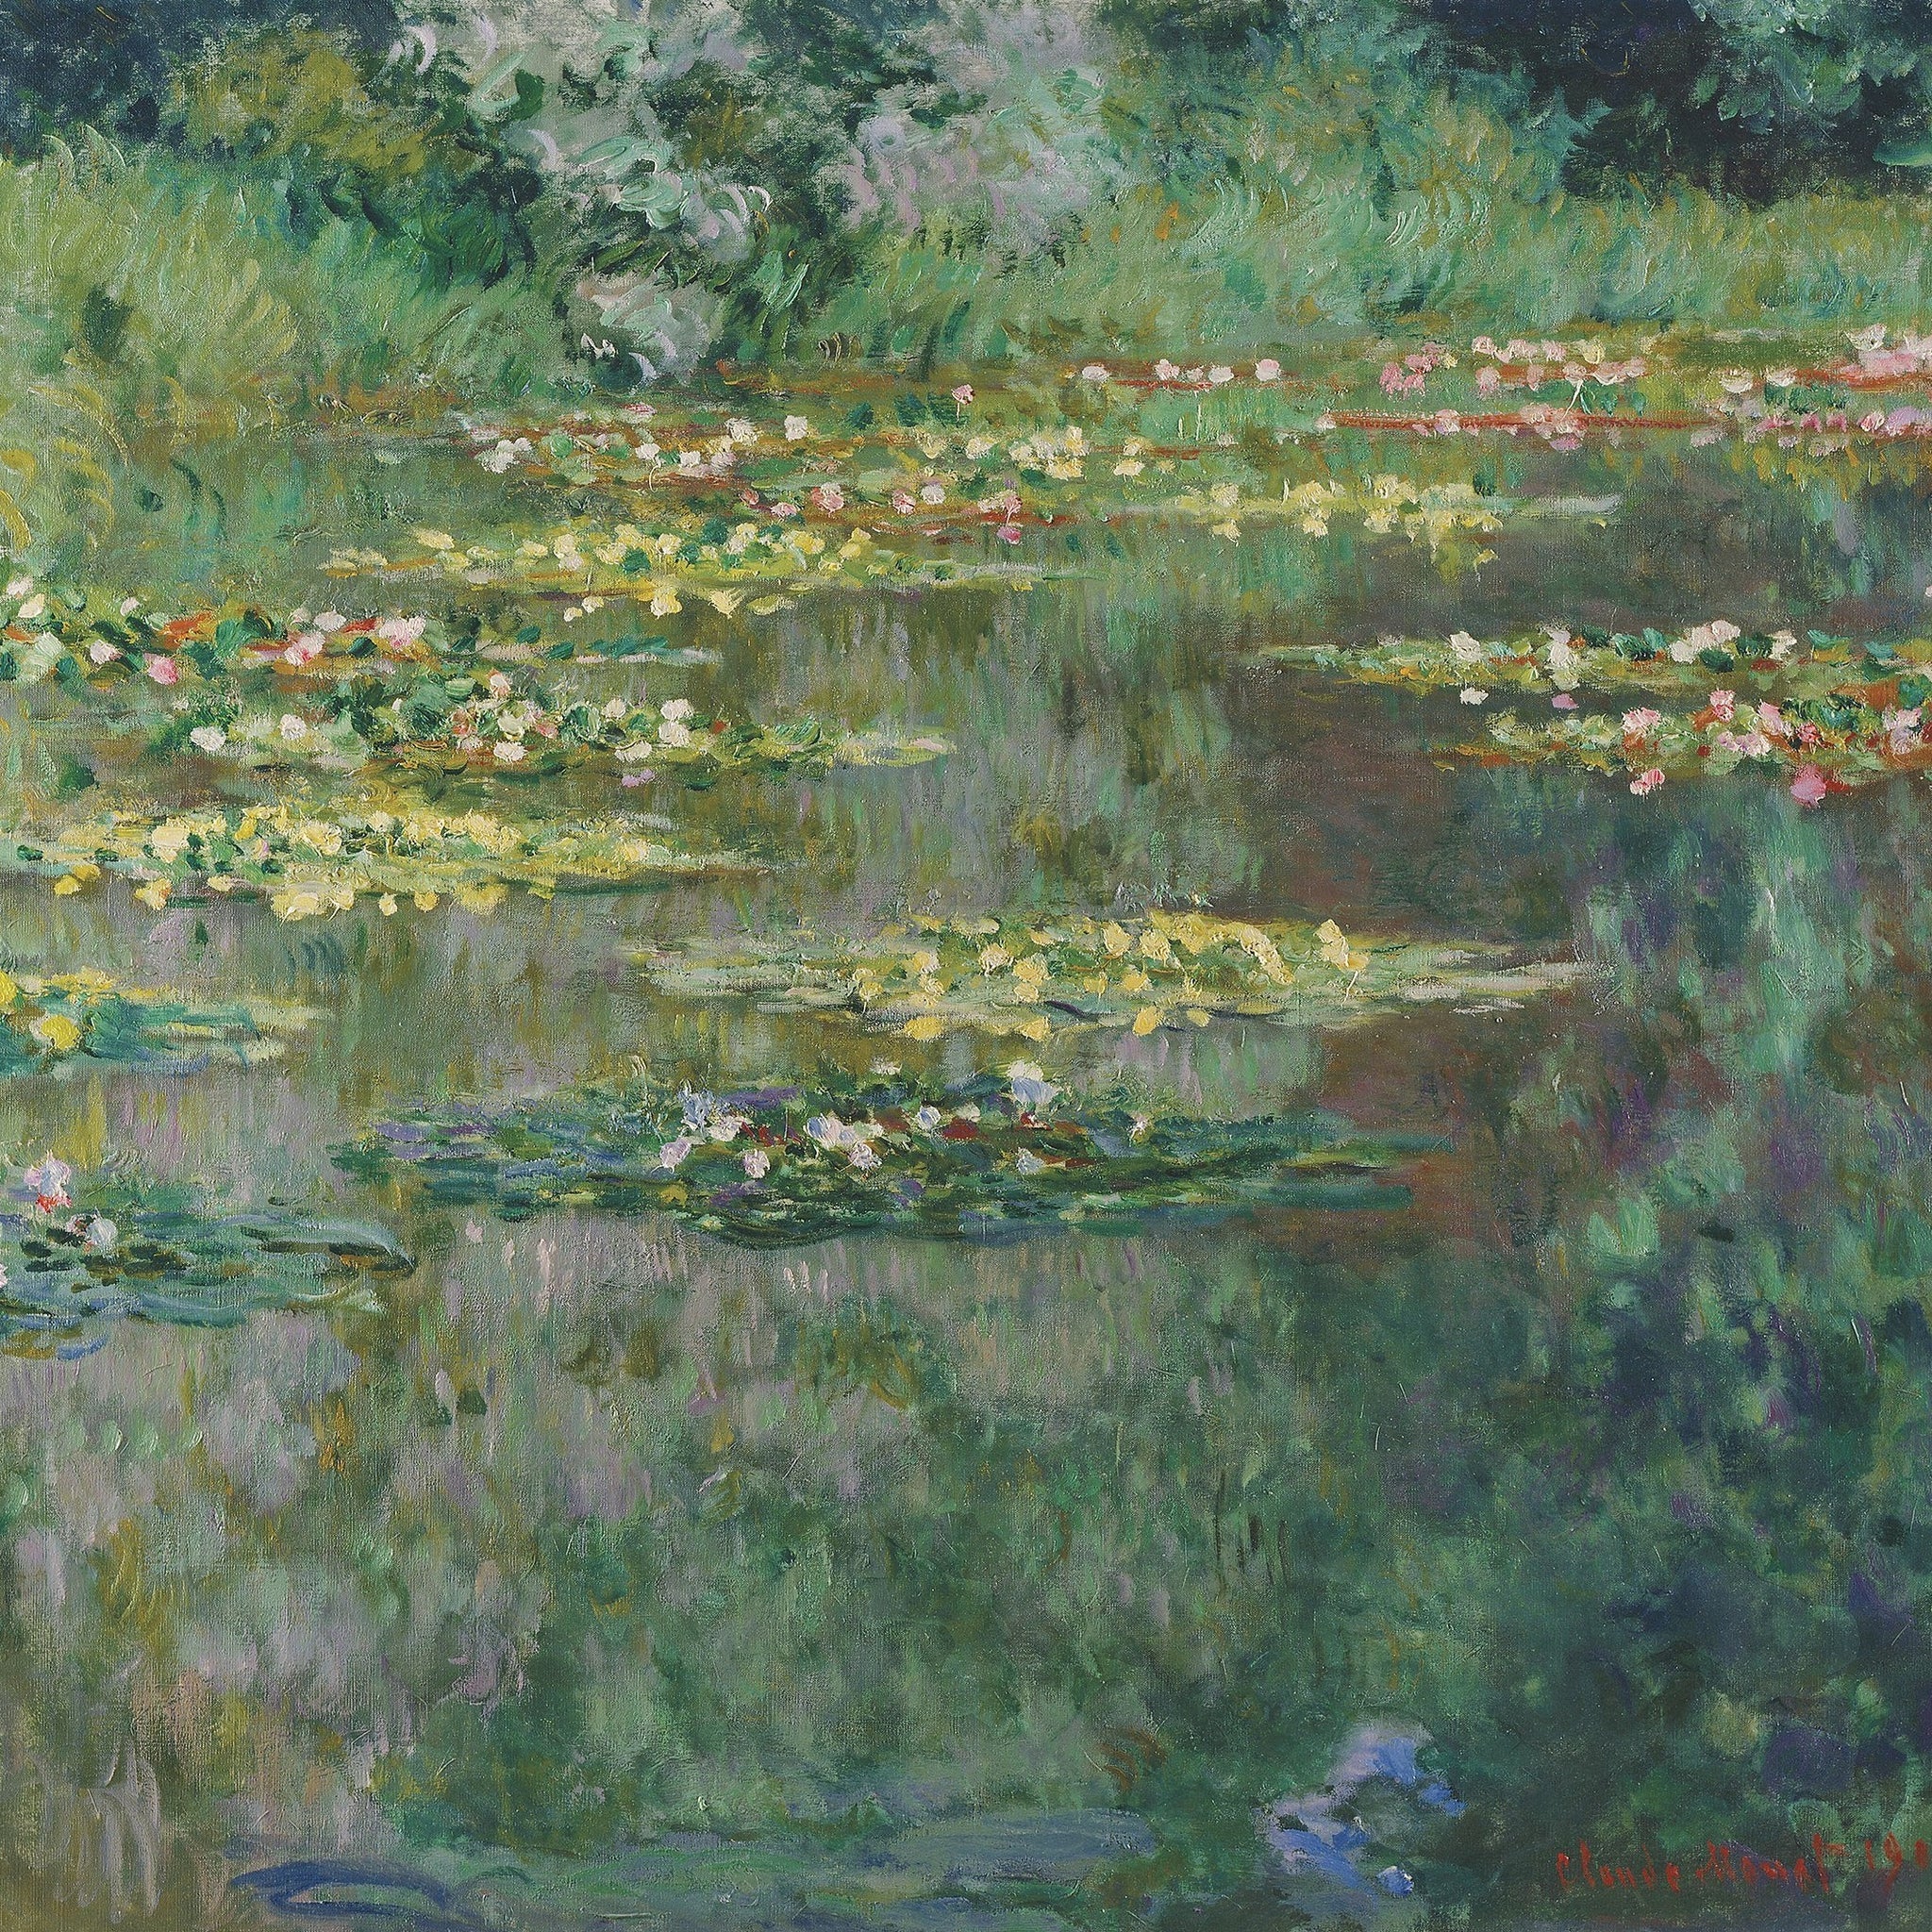 Le Bassin des nymphéas - Claude Monet